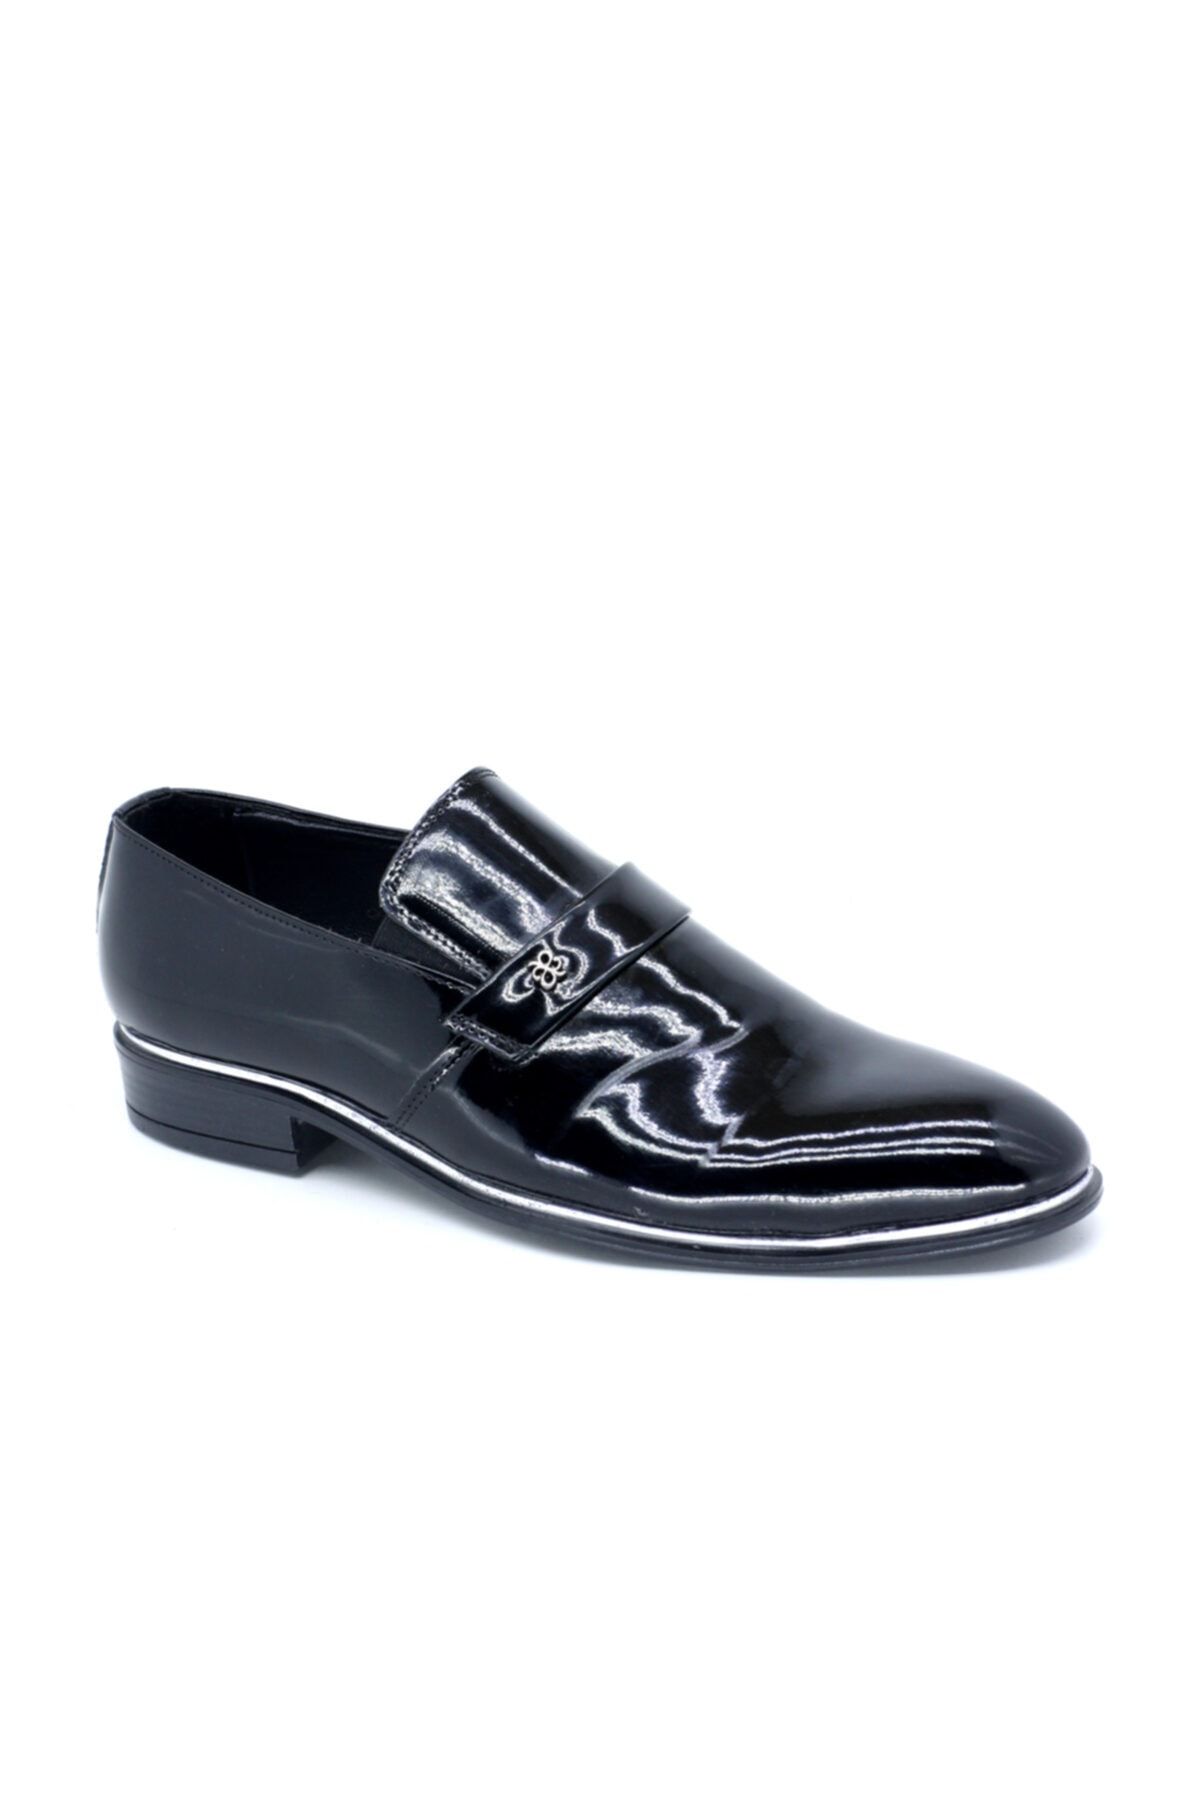 TRENDYSHOES Trendyshose 03558 Erkek Klasıktopuklu Günlük Ayakkabı